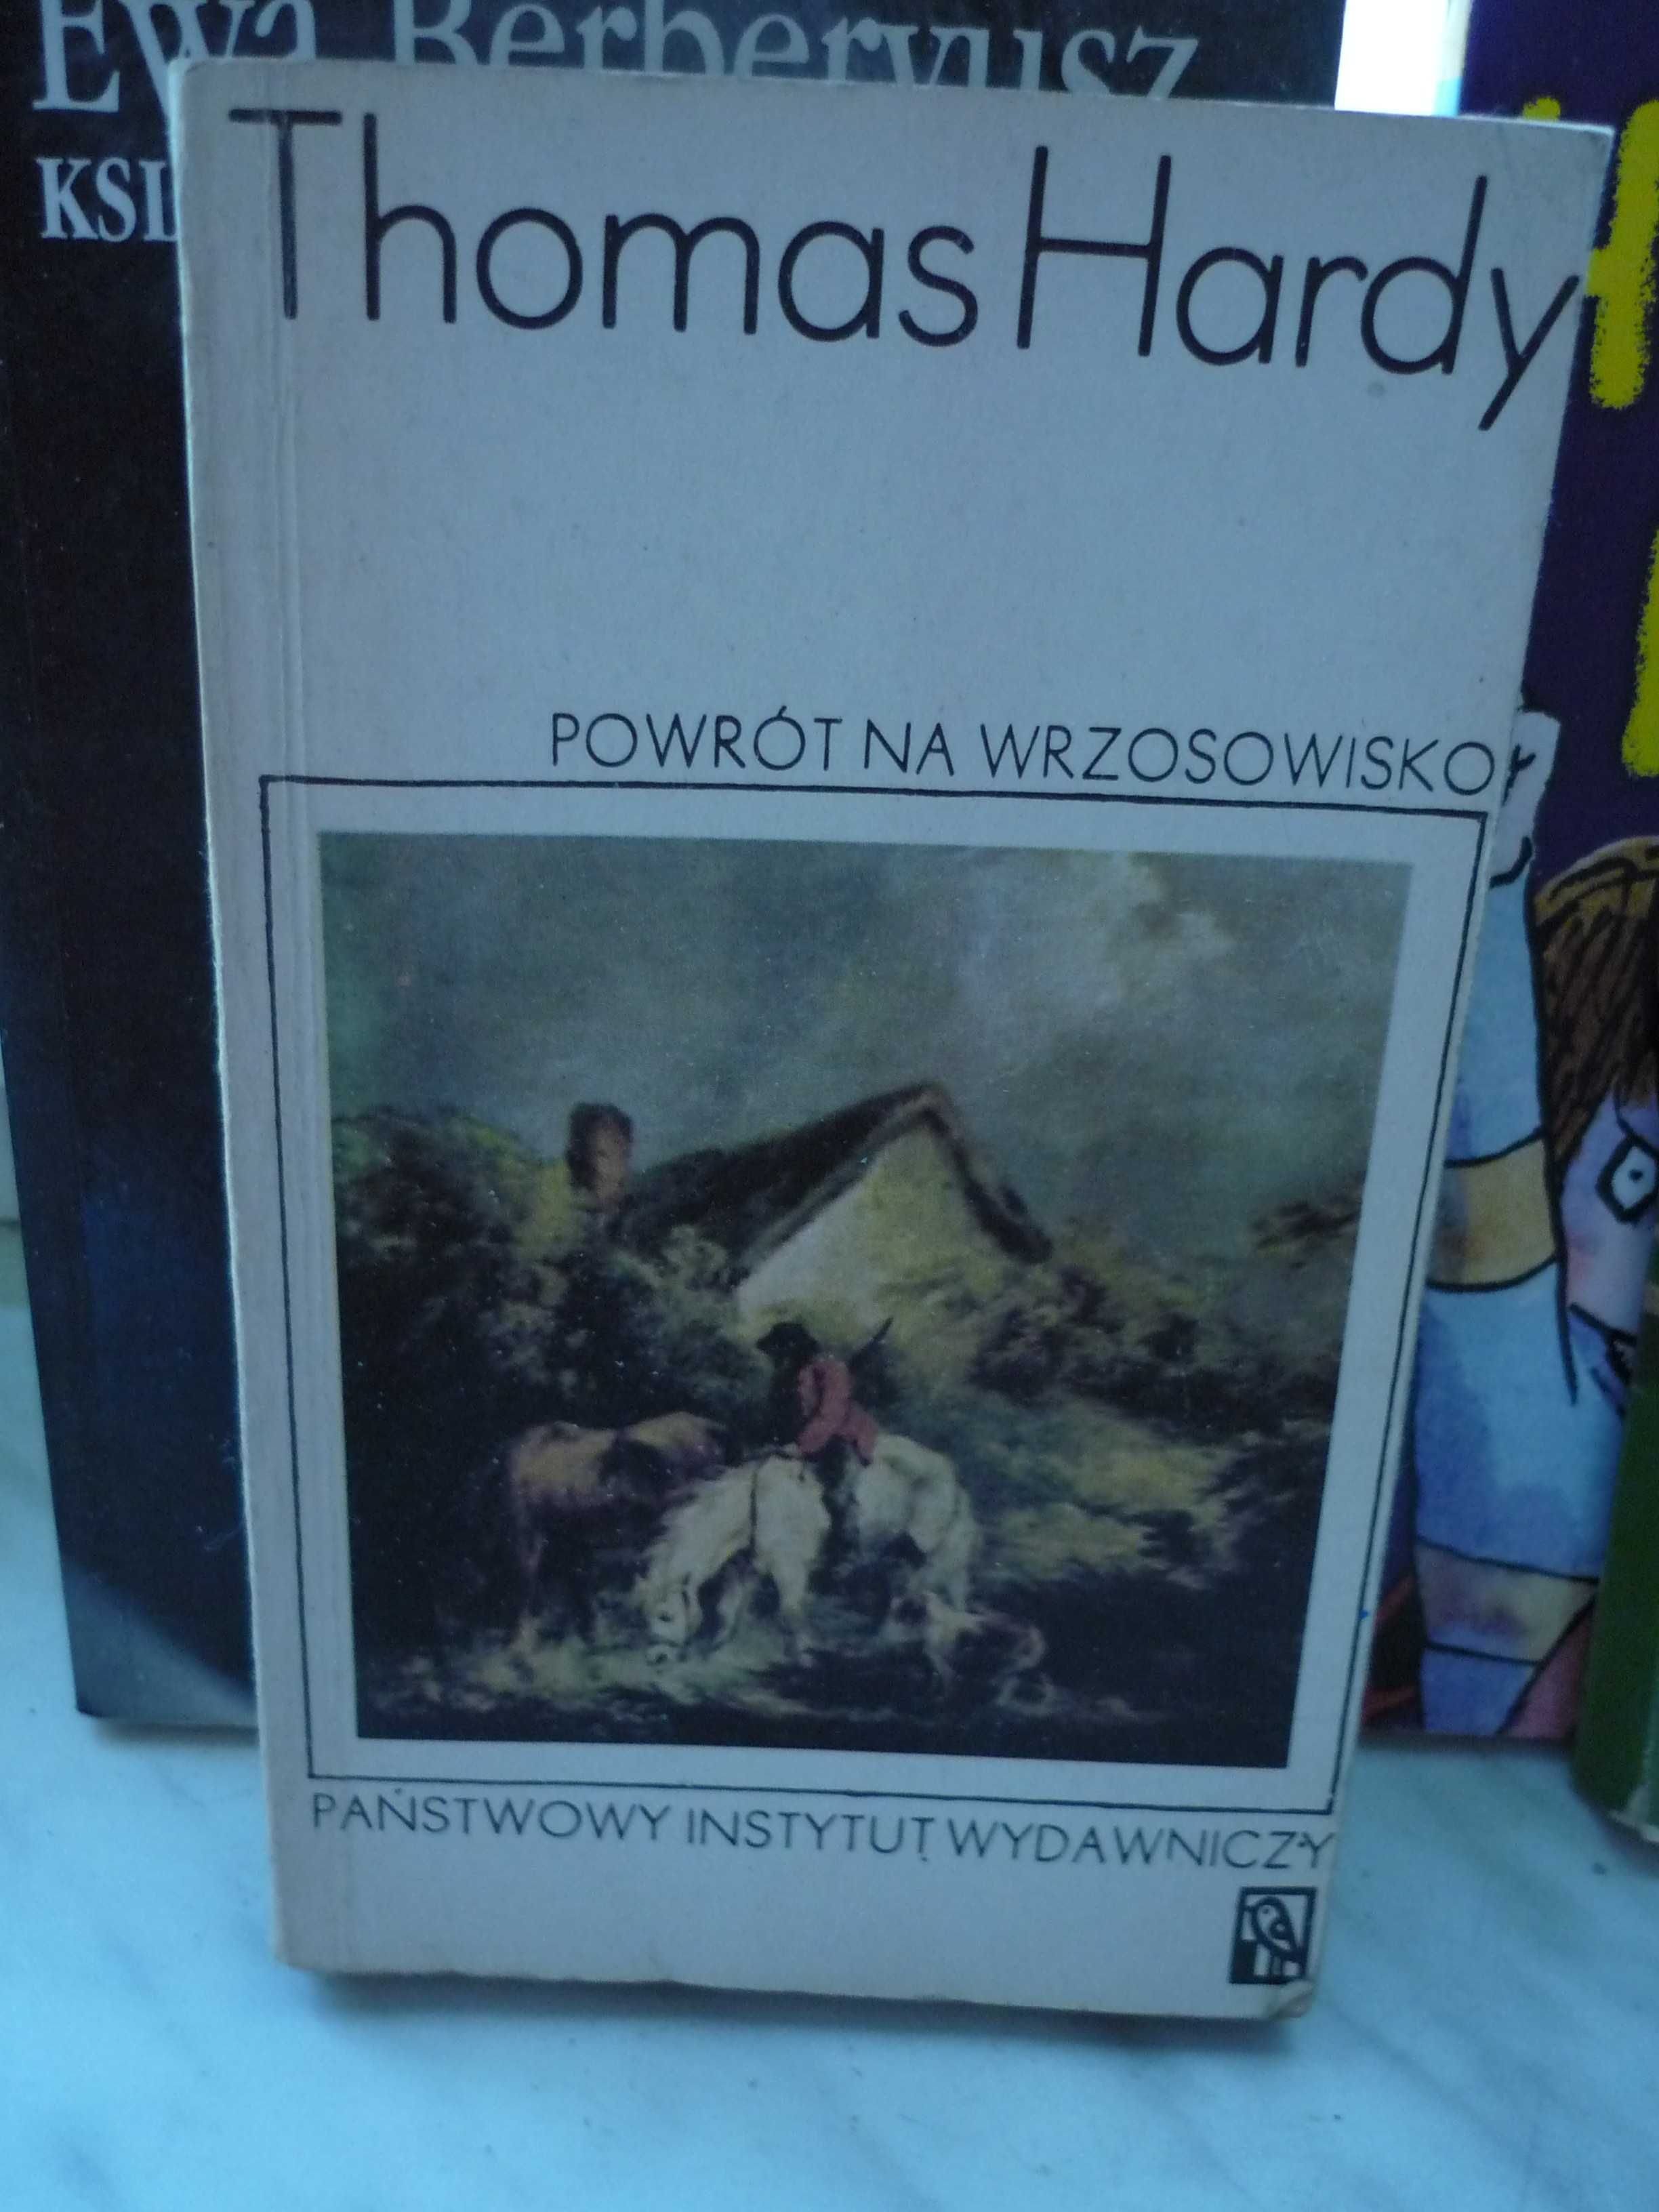 Powrót na wrzosowisko , Thomas Hardy.